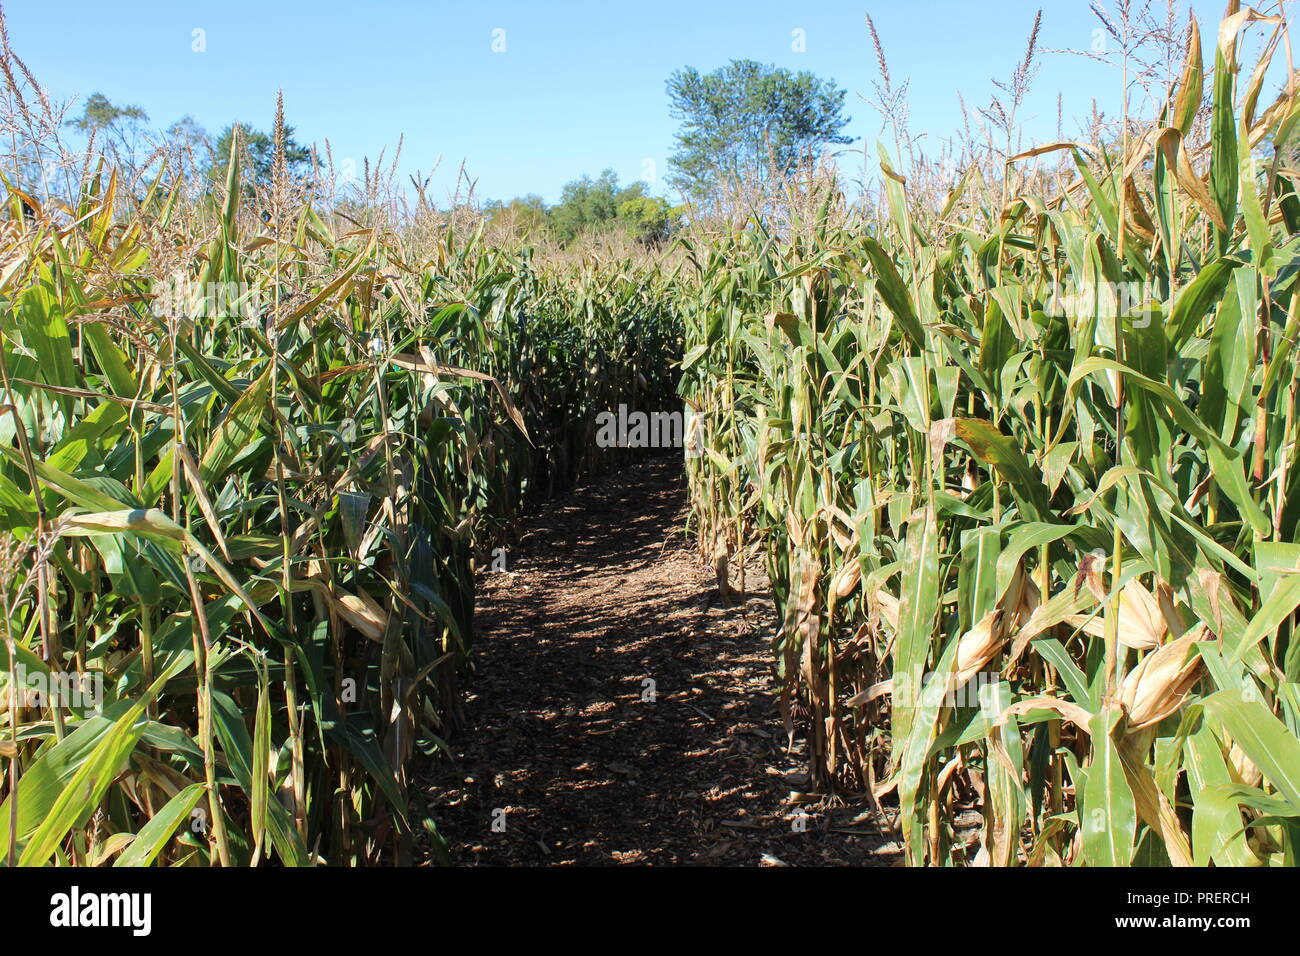 Entrata in un labirinto di mais , Tall verde stocchi di mais linea il percorso a labirinto in cui i bambini sono in funzione circa perso all'interno. Foto Stock